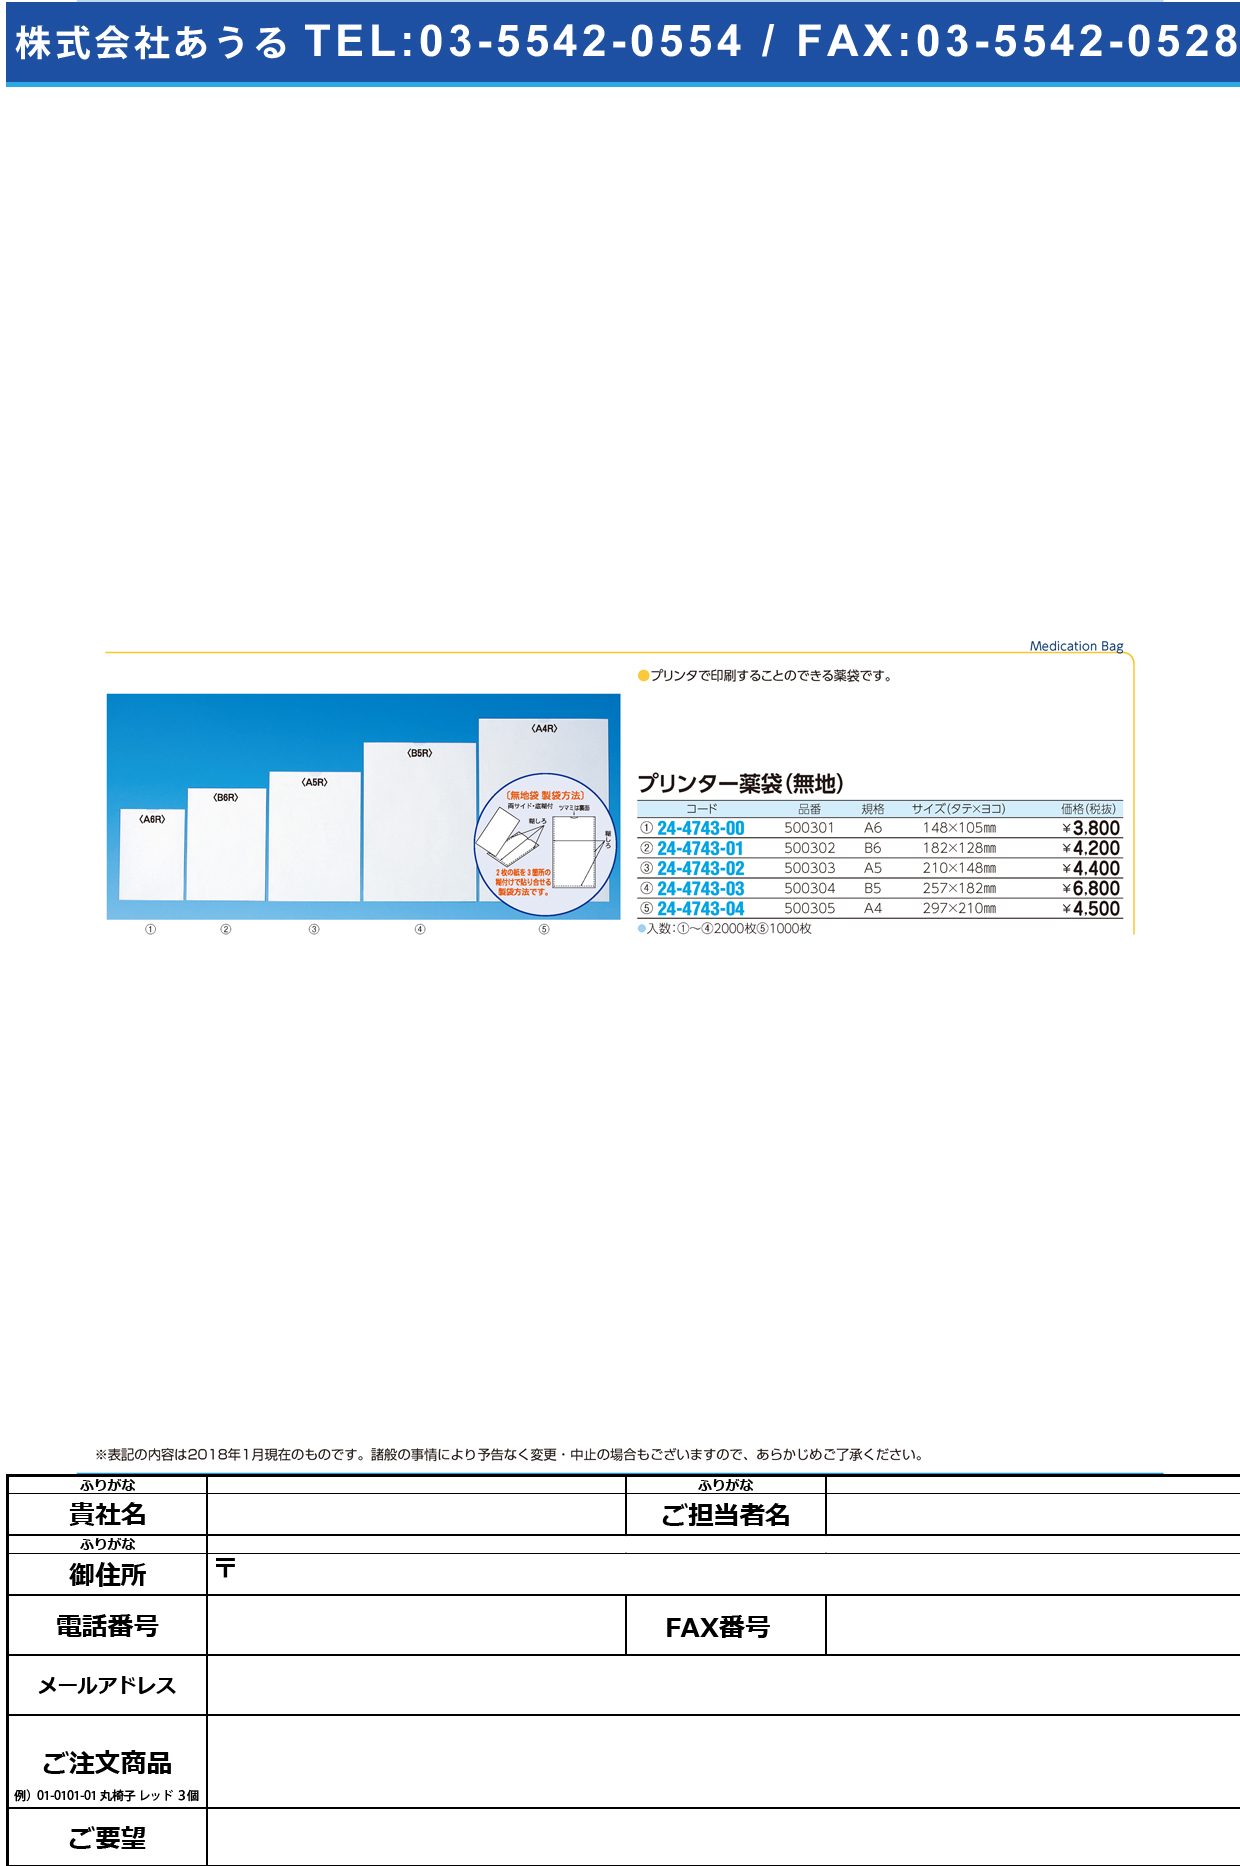 (24-4743-03)プリンター薬袋（無地） 500304(B5)2000ﾏｲ ﾌﾟﾘﾝﾀｰﾔｸﾀｲ【1箱単位】【2019年カタログ商品】